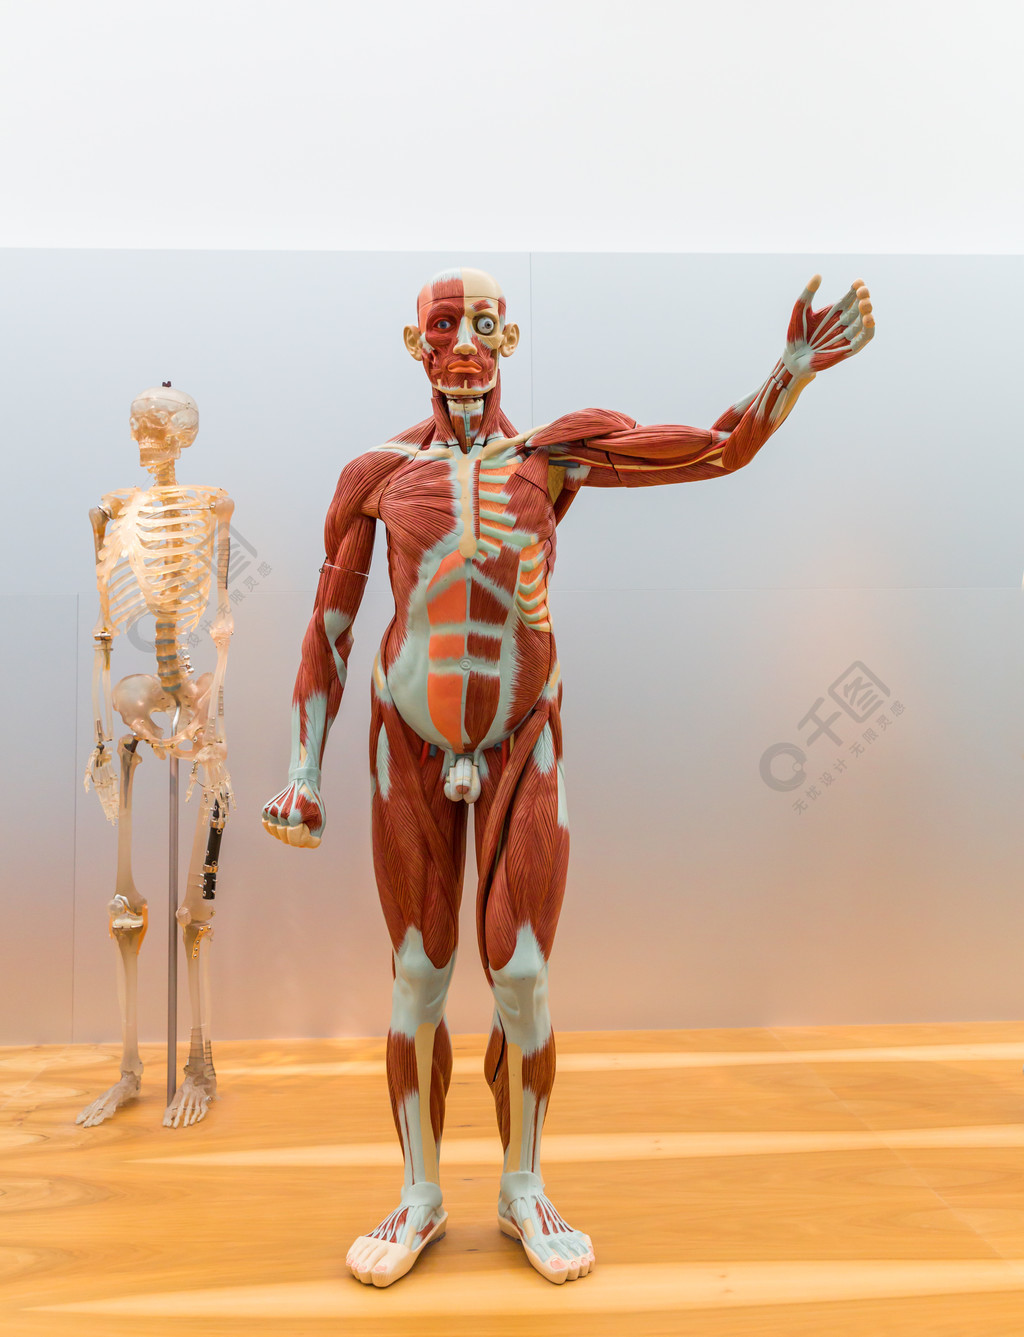 男性人体,肌肉系统的解剖模型和骨骼医学海报,医学教育理念1年前发布